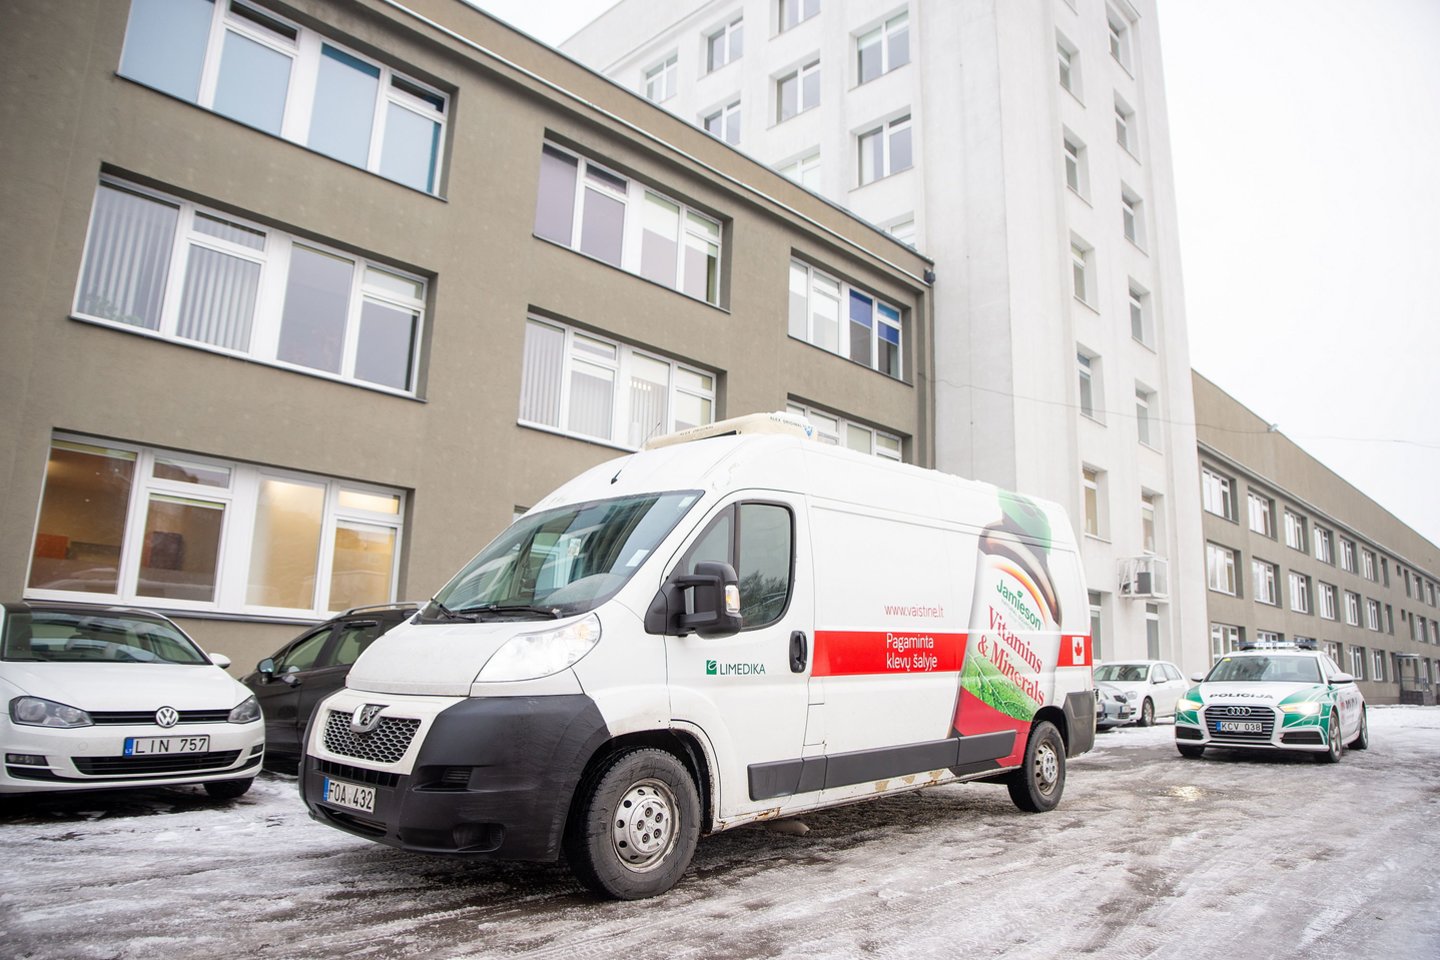  Antradienį vakcina atgabenta į Kauno miesto poliklinikos Dainavos padalinį.<br> Kauno savivaldybės nuotr.